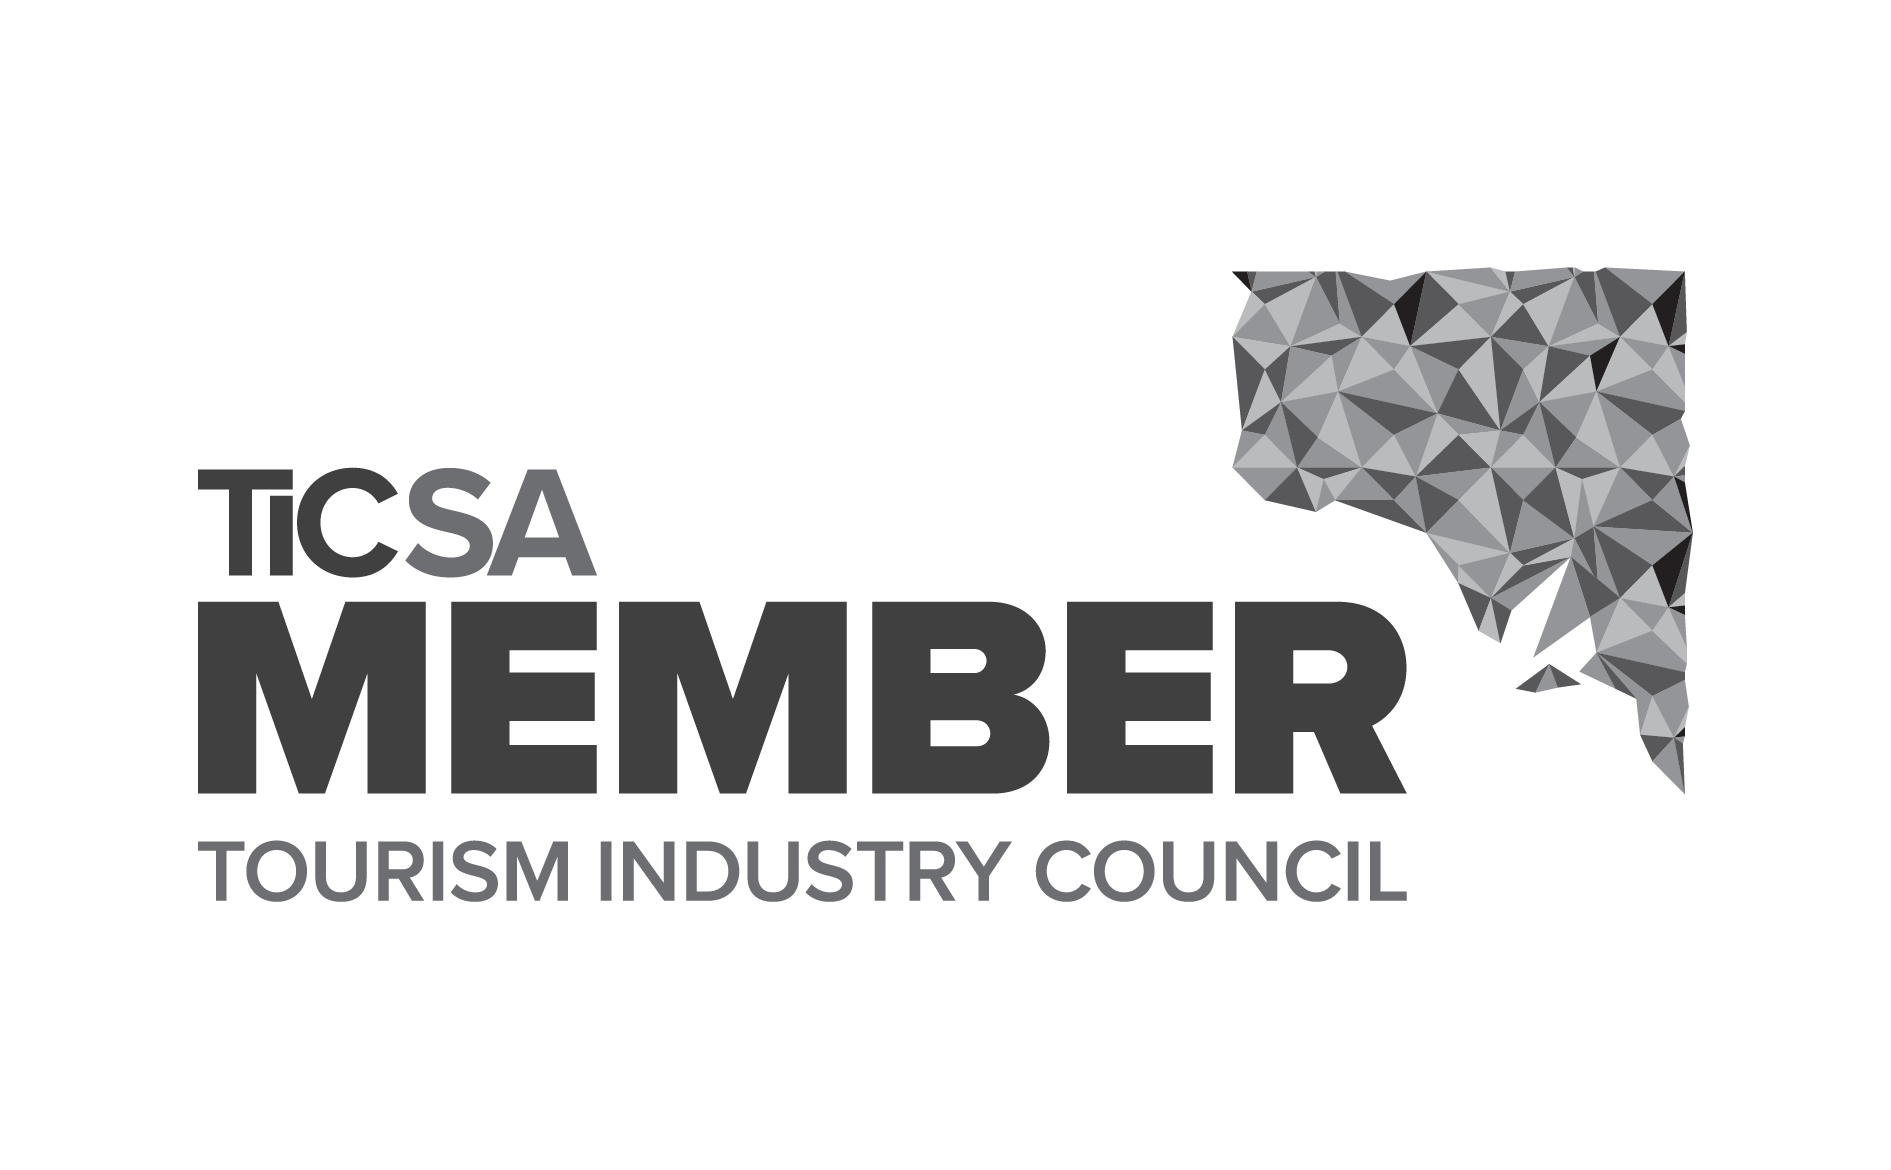 We are a TICSA member!